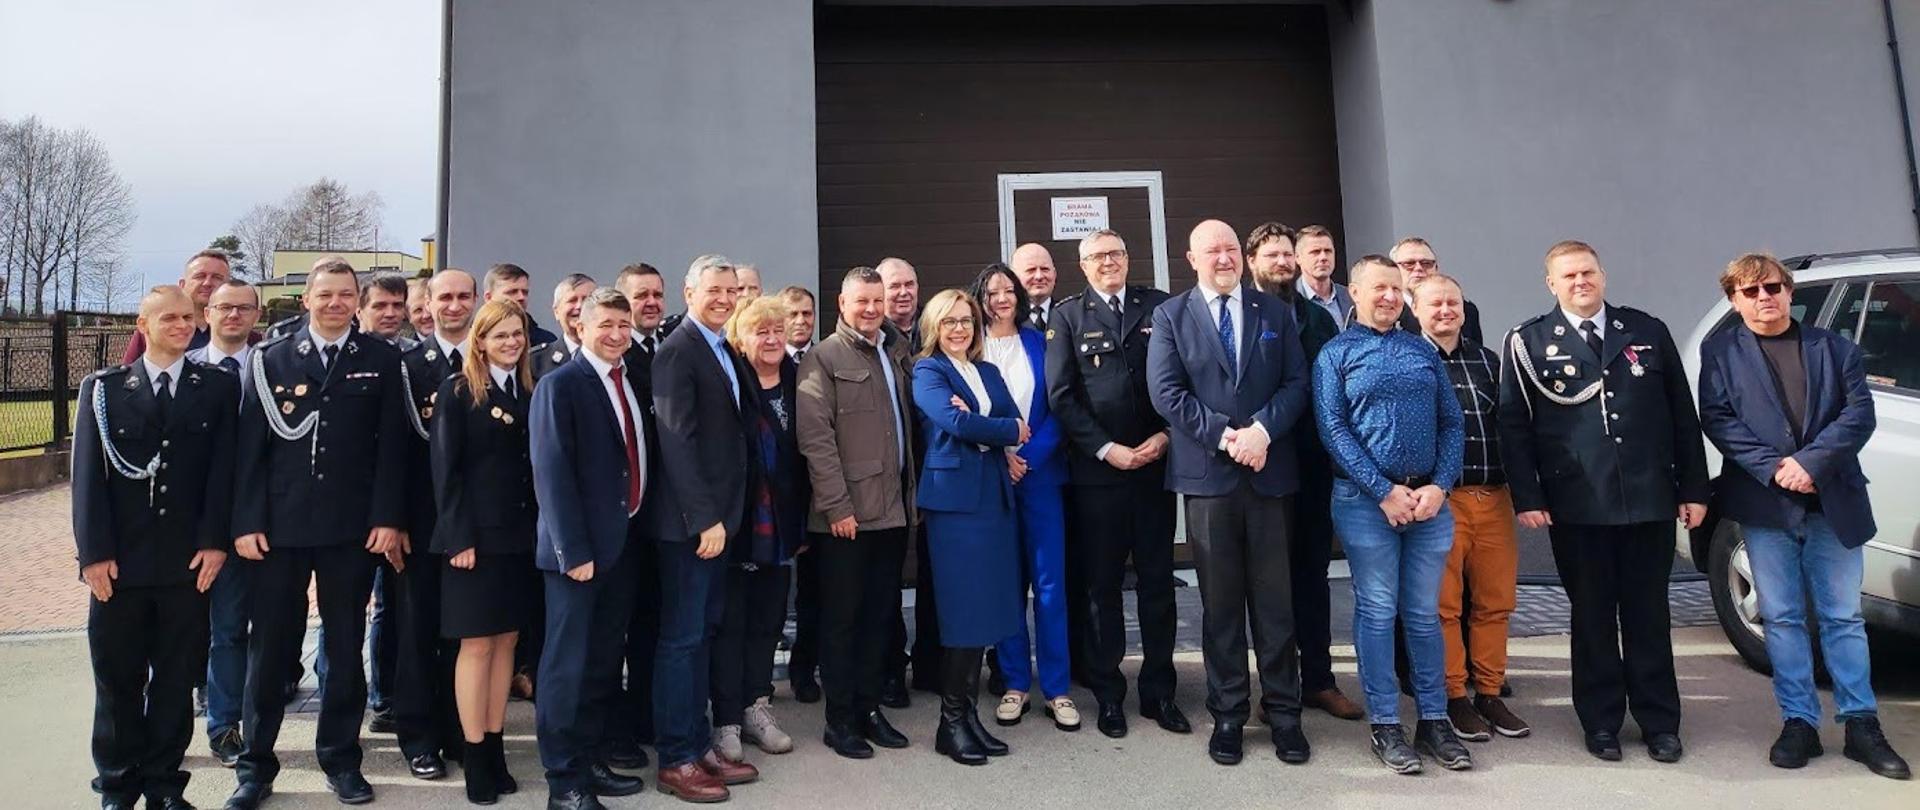 W dniu 13 marca br. odbyła się uroczystość związana z oddaniem do użytku budynku OSP w Bestwince po termomodernizacji. 